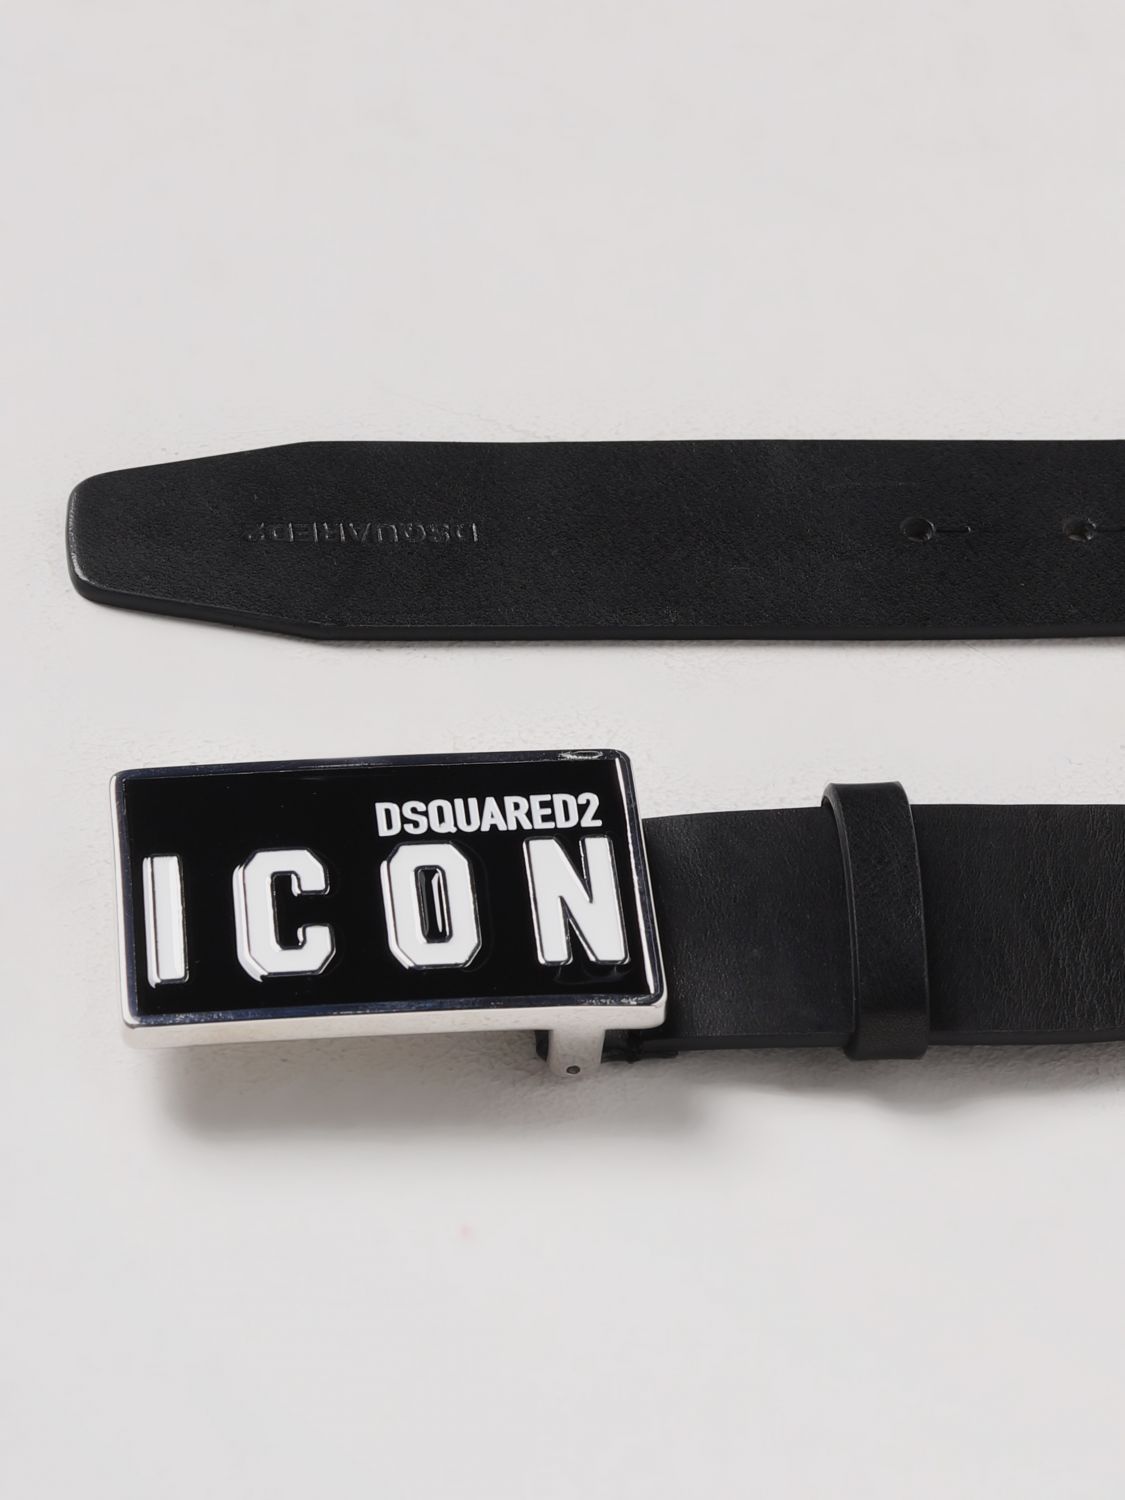 ik ben gelukkig Implementeren Tomaat DSQUARED2: belt for man - Black | Dsquared2 belt BEM032612900001 online on  GIGLIO.COM